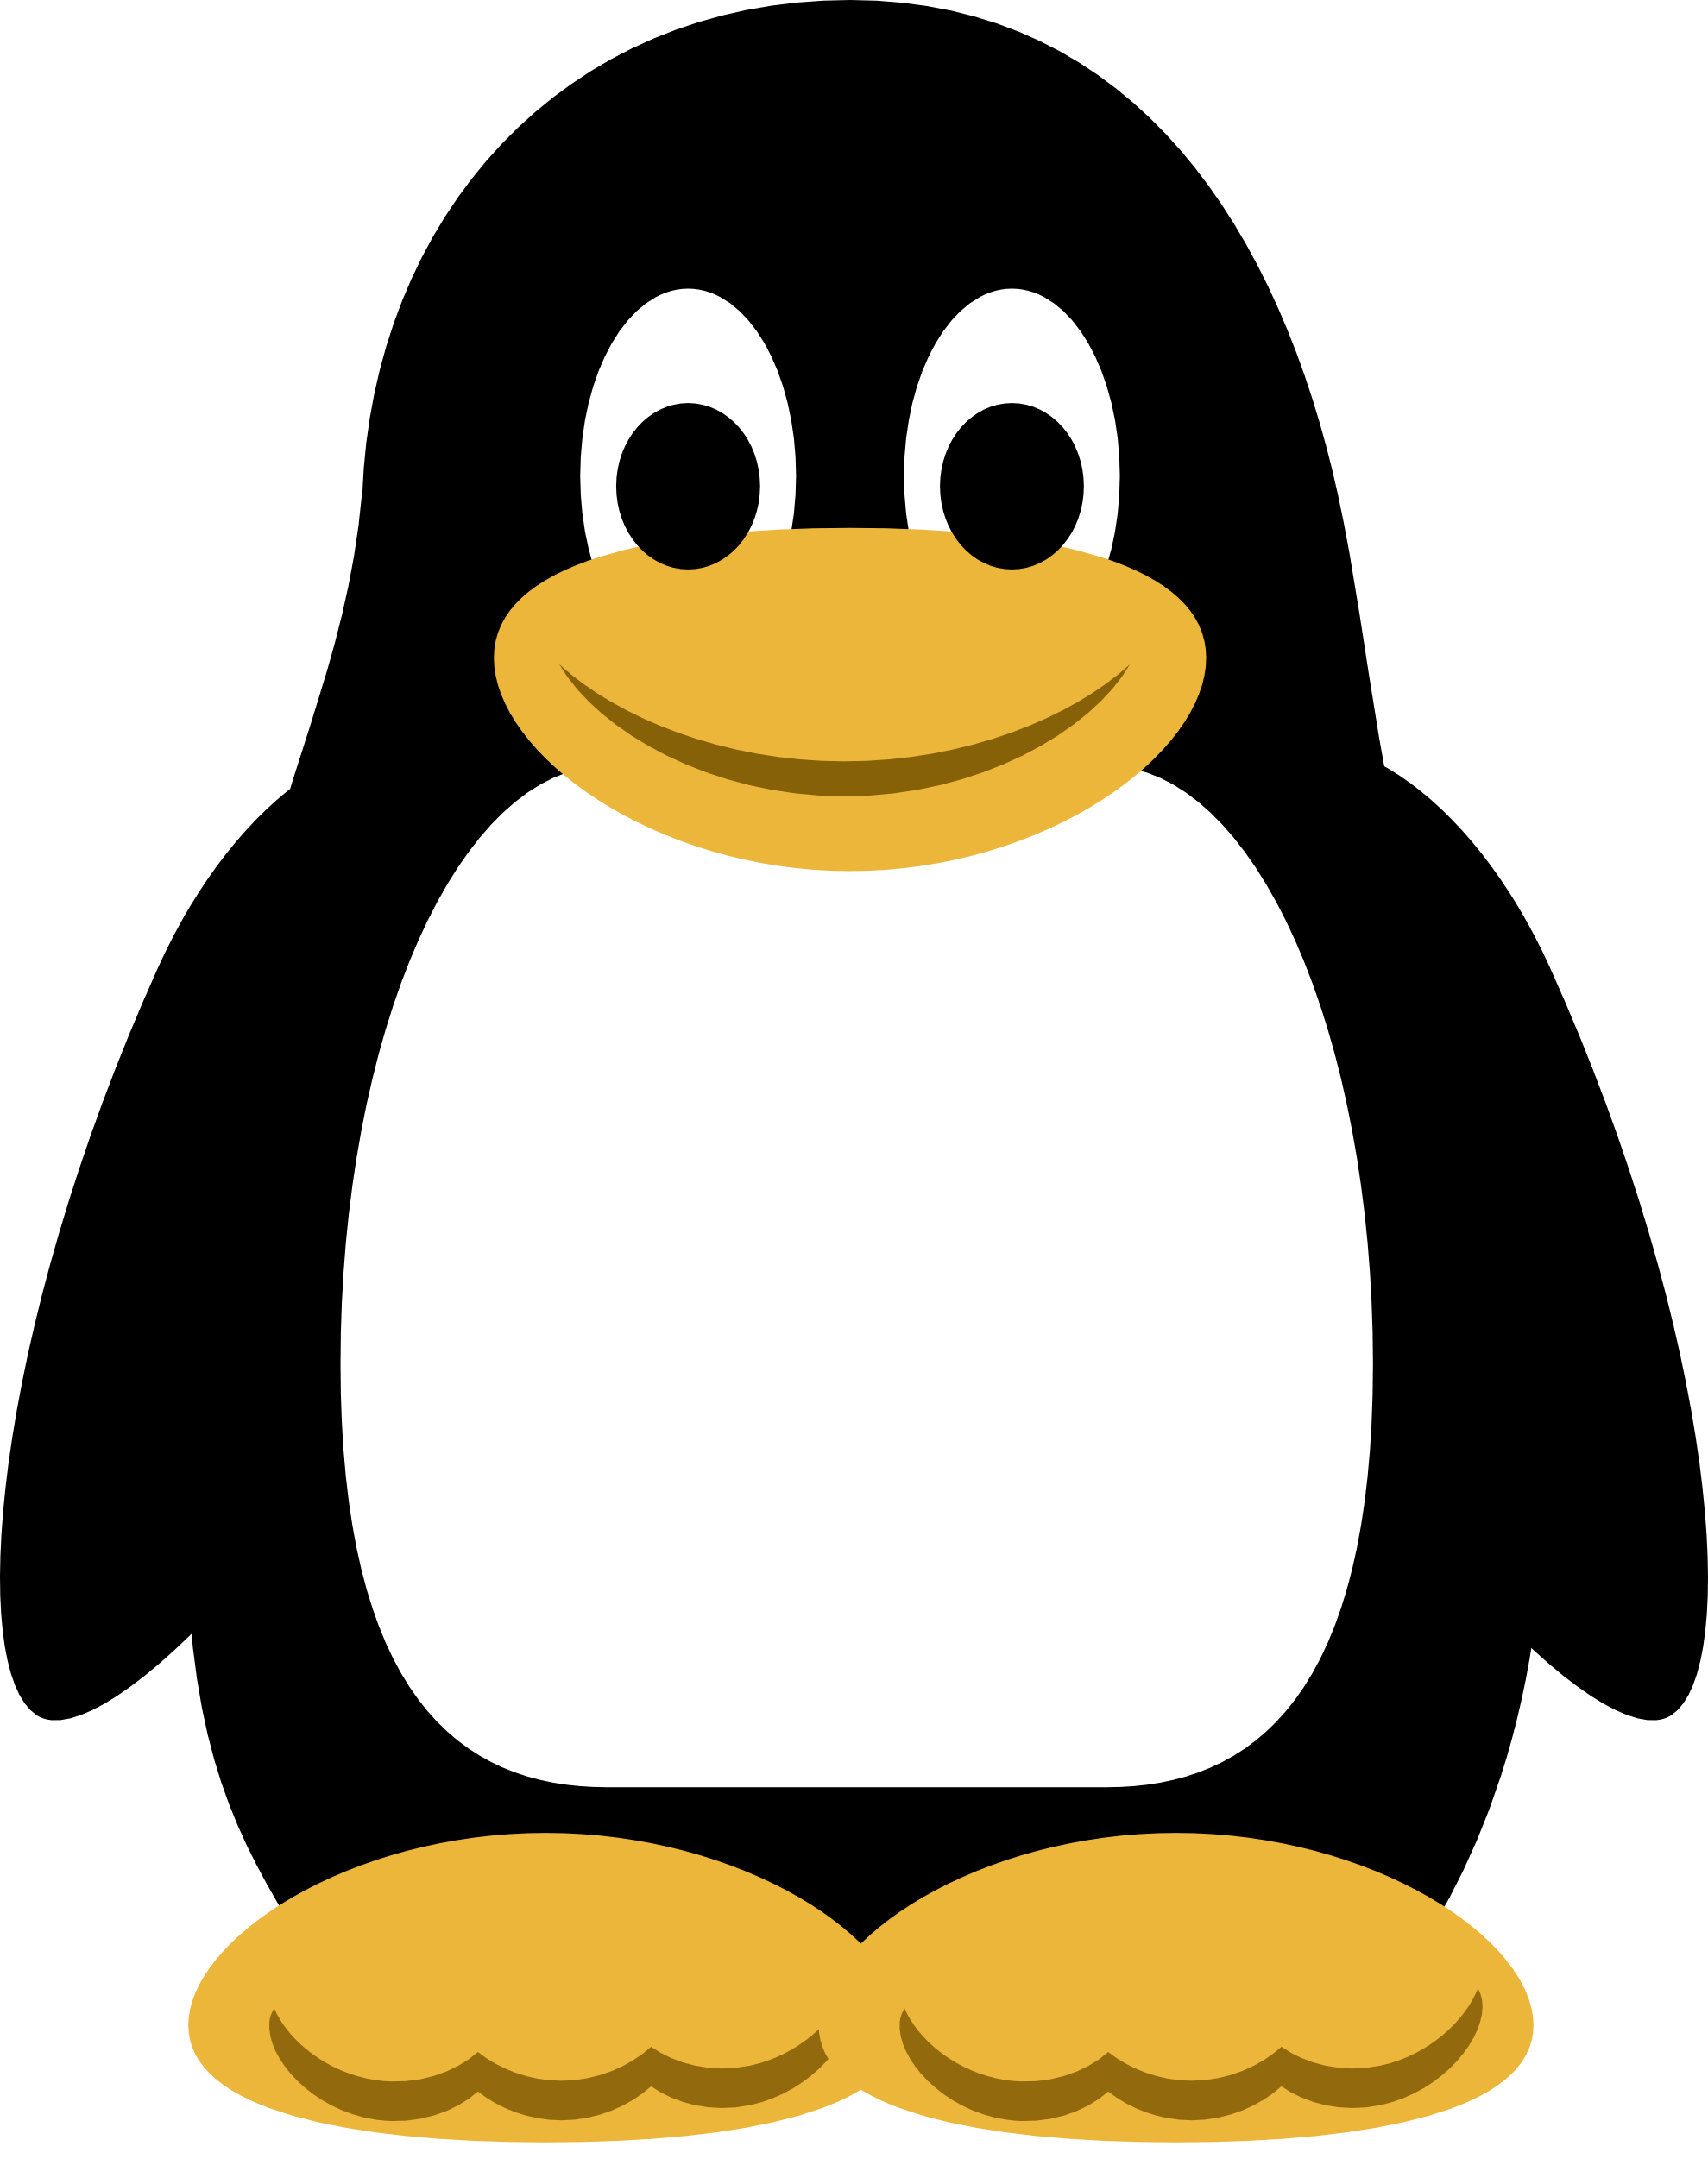 Font Chipmunk Linux Tux Christmas PNG